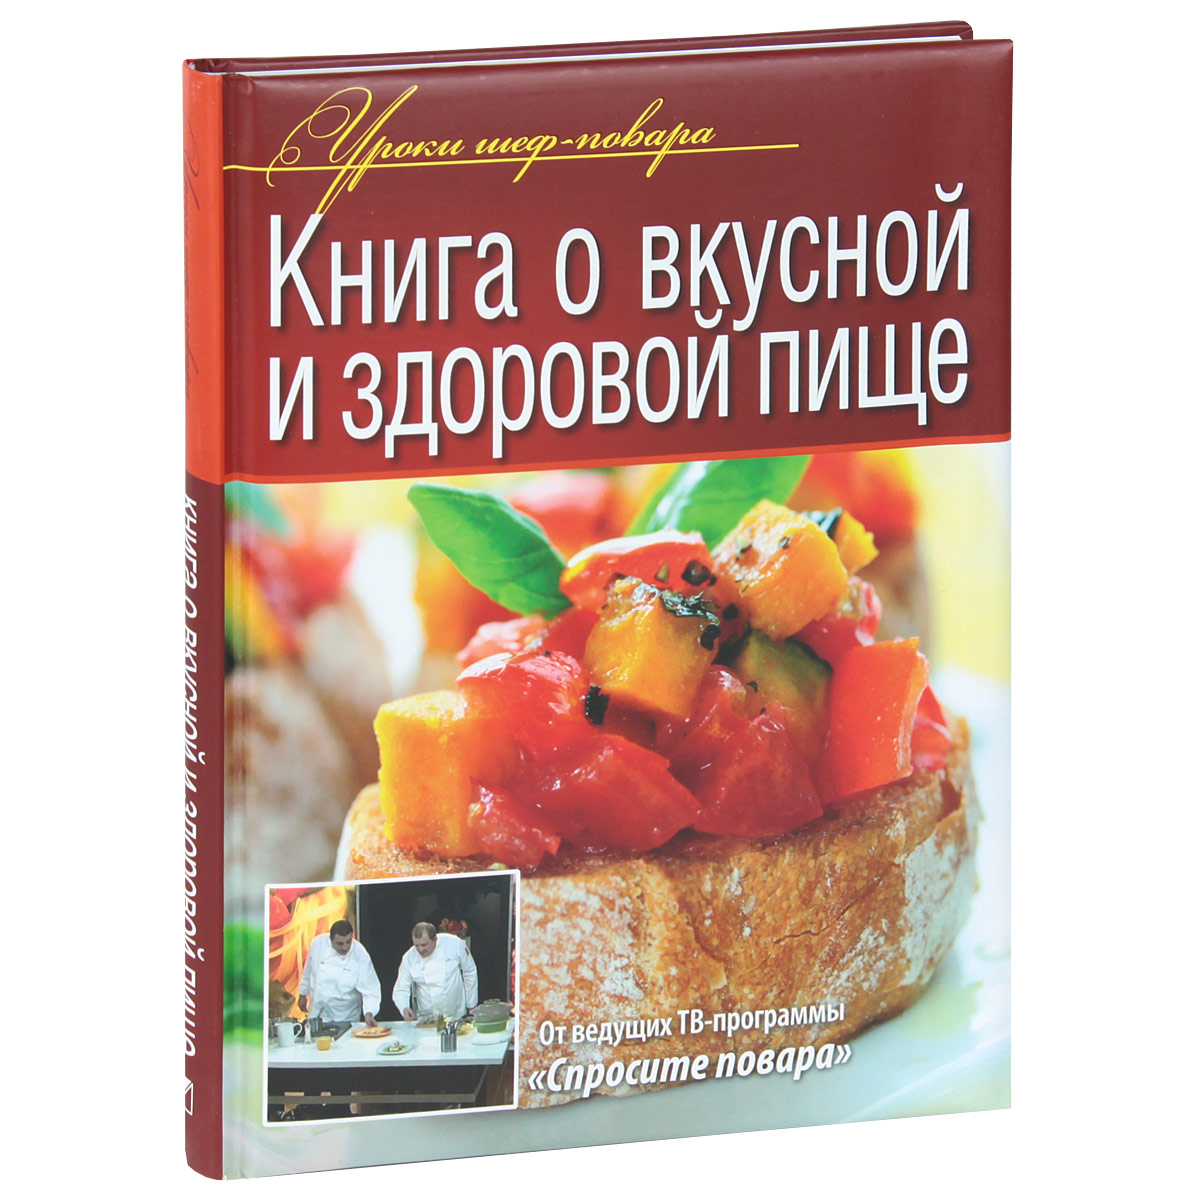 Книга Книга о вкусной и здоровой пище - купить книжку в книжном интернет магазине OZON.ru по выгодной цене